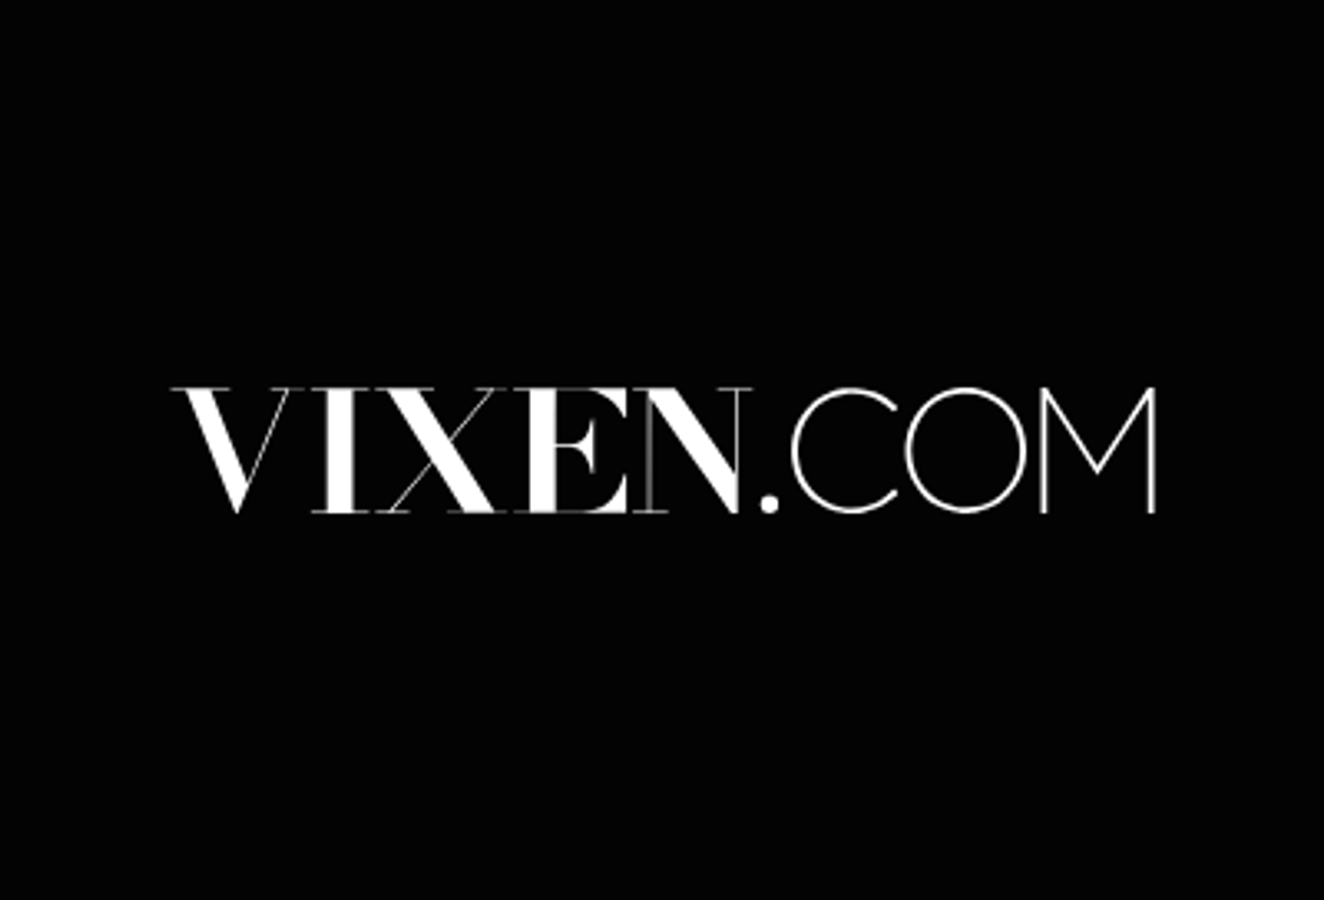 Vixen Media Group